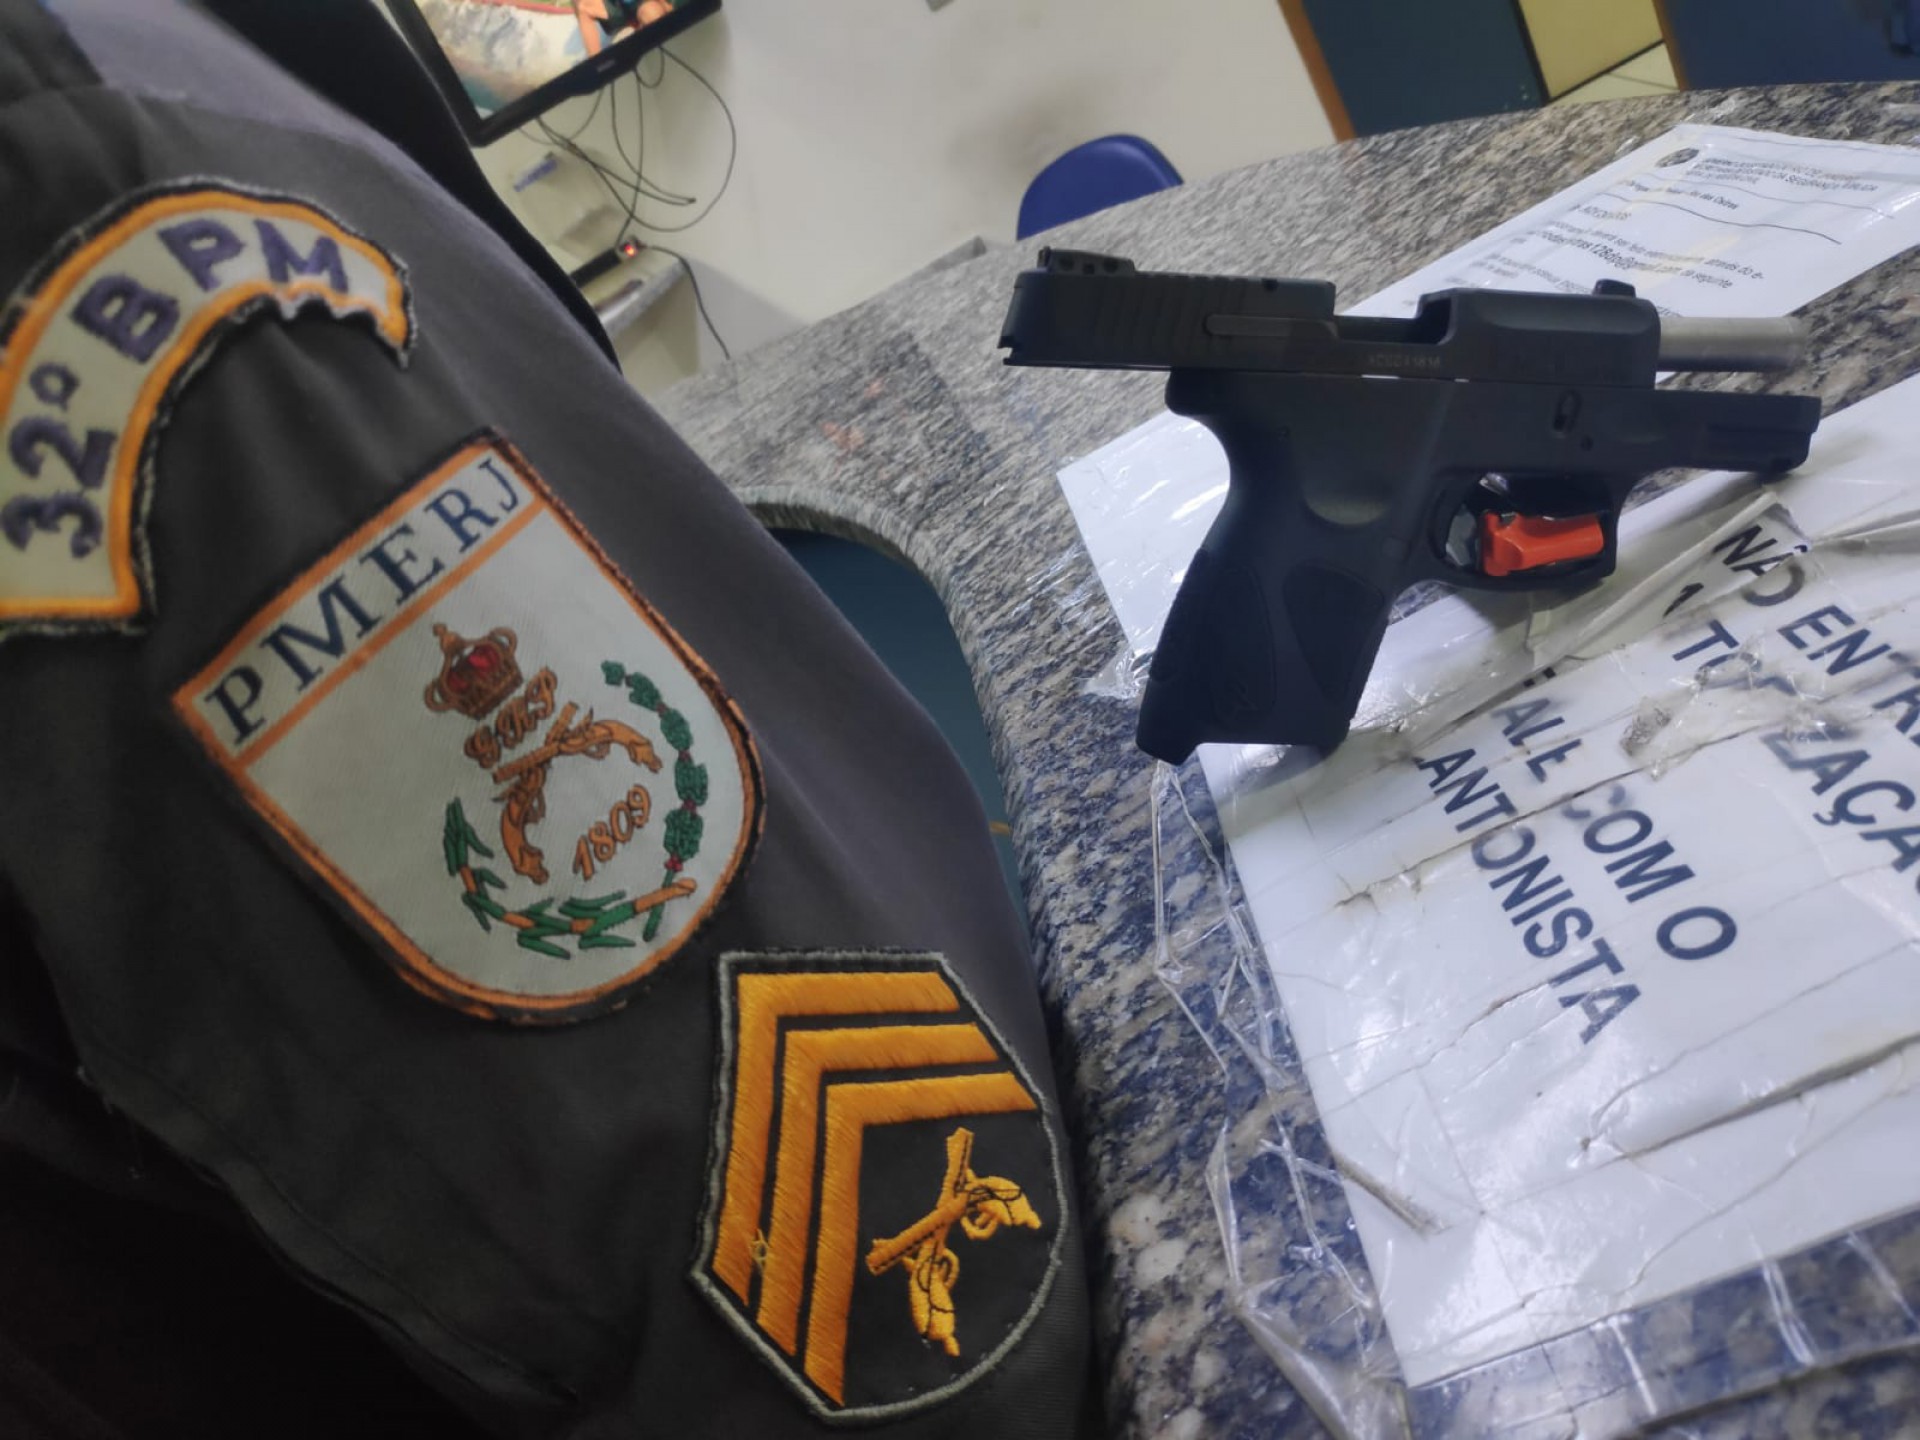 Ao realizar uma revista, a guarnição policial encontrou a pistola citada, calibre 40, modelo G2c, desmuniciada dentro da bolsa da mulher - Divulgação